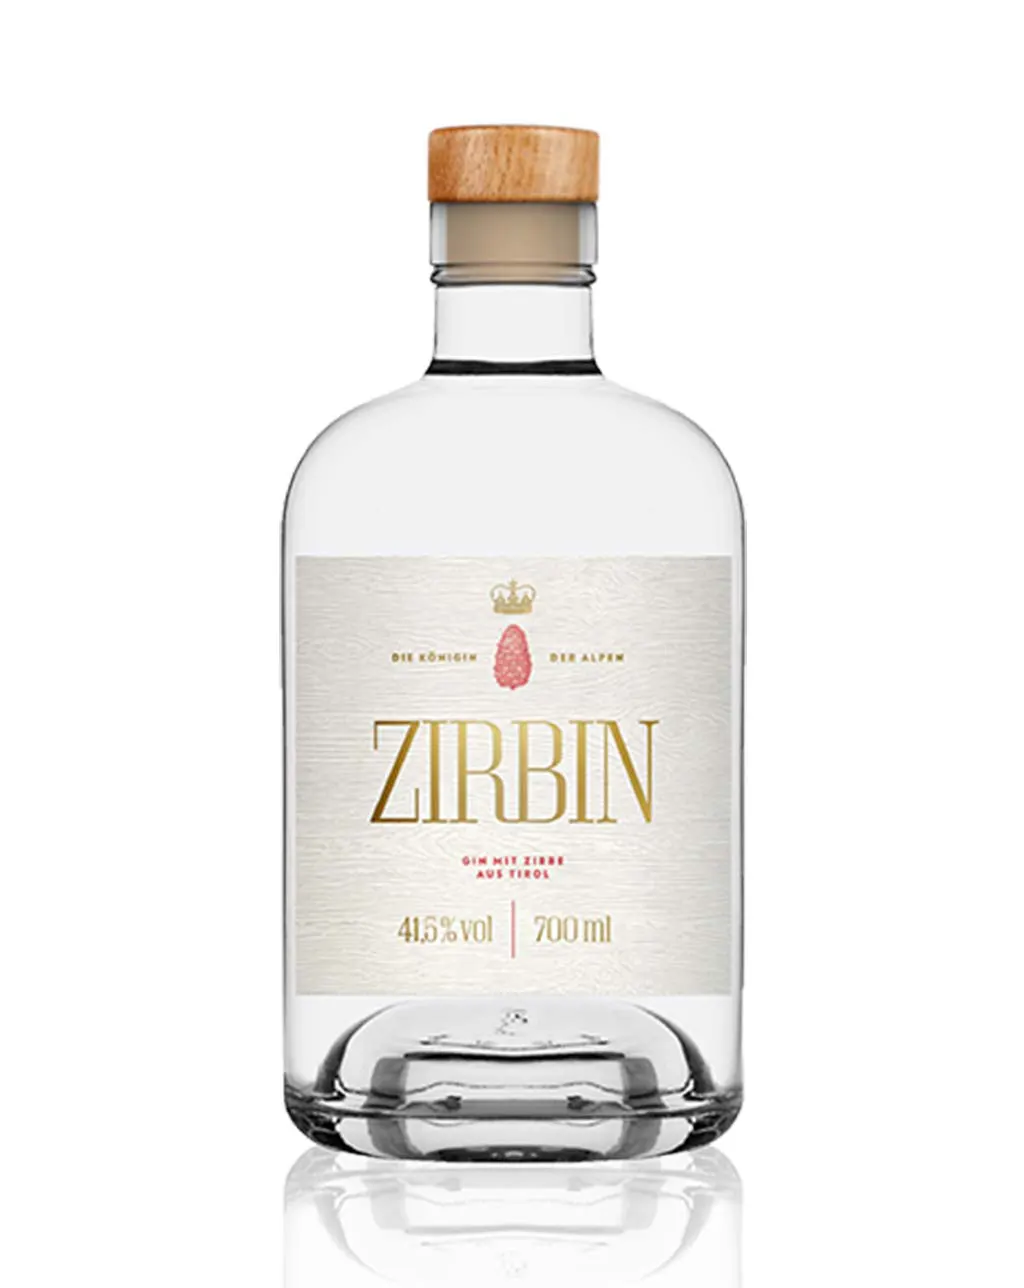 ZIRBIN DRY GIN 200 ml front